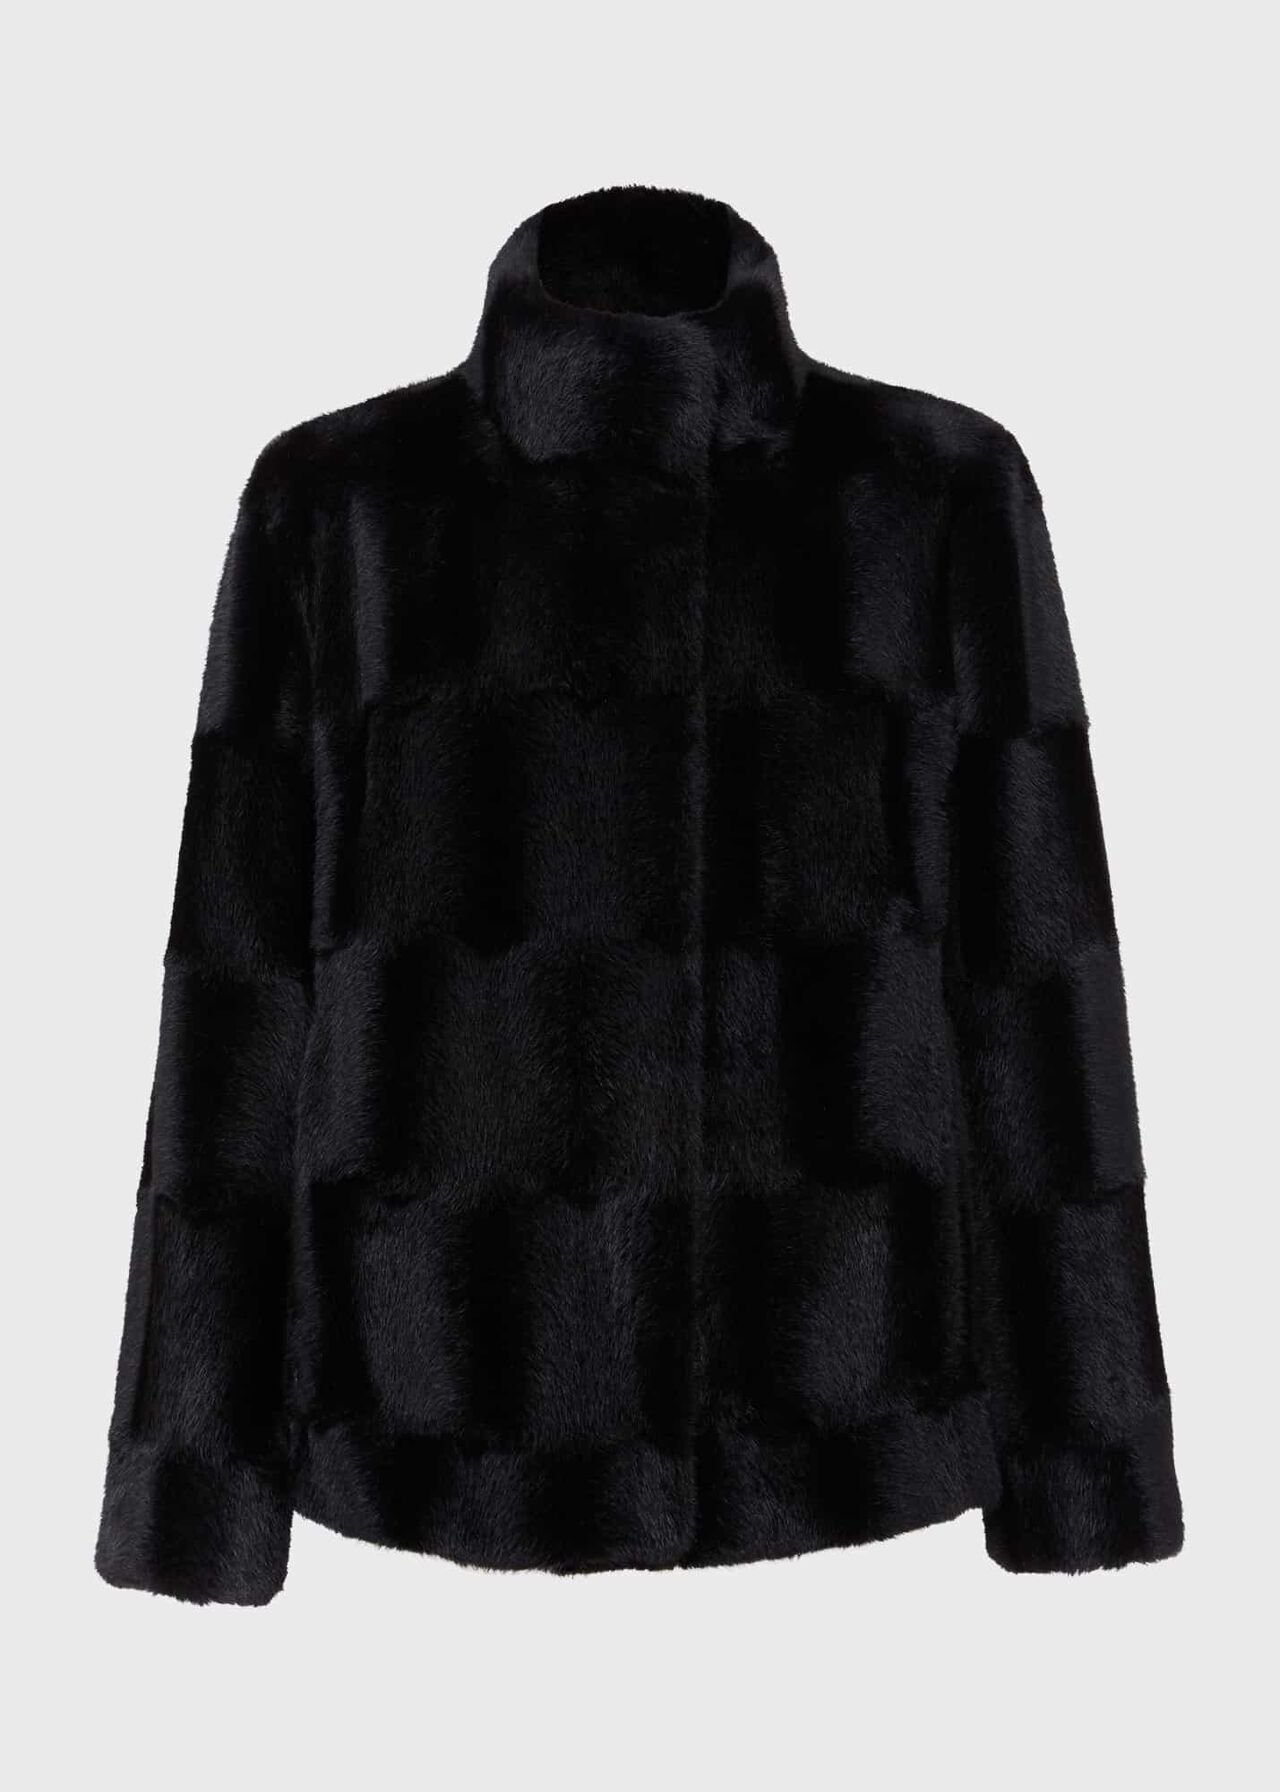 Andrea Faux Fur Coat, Black, hi-res